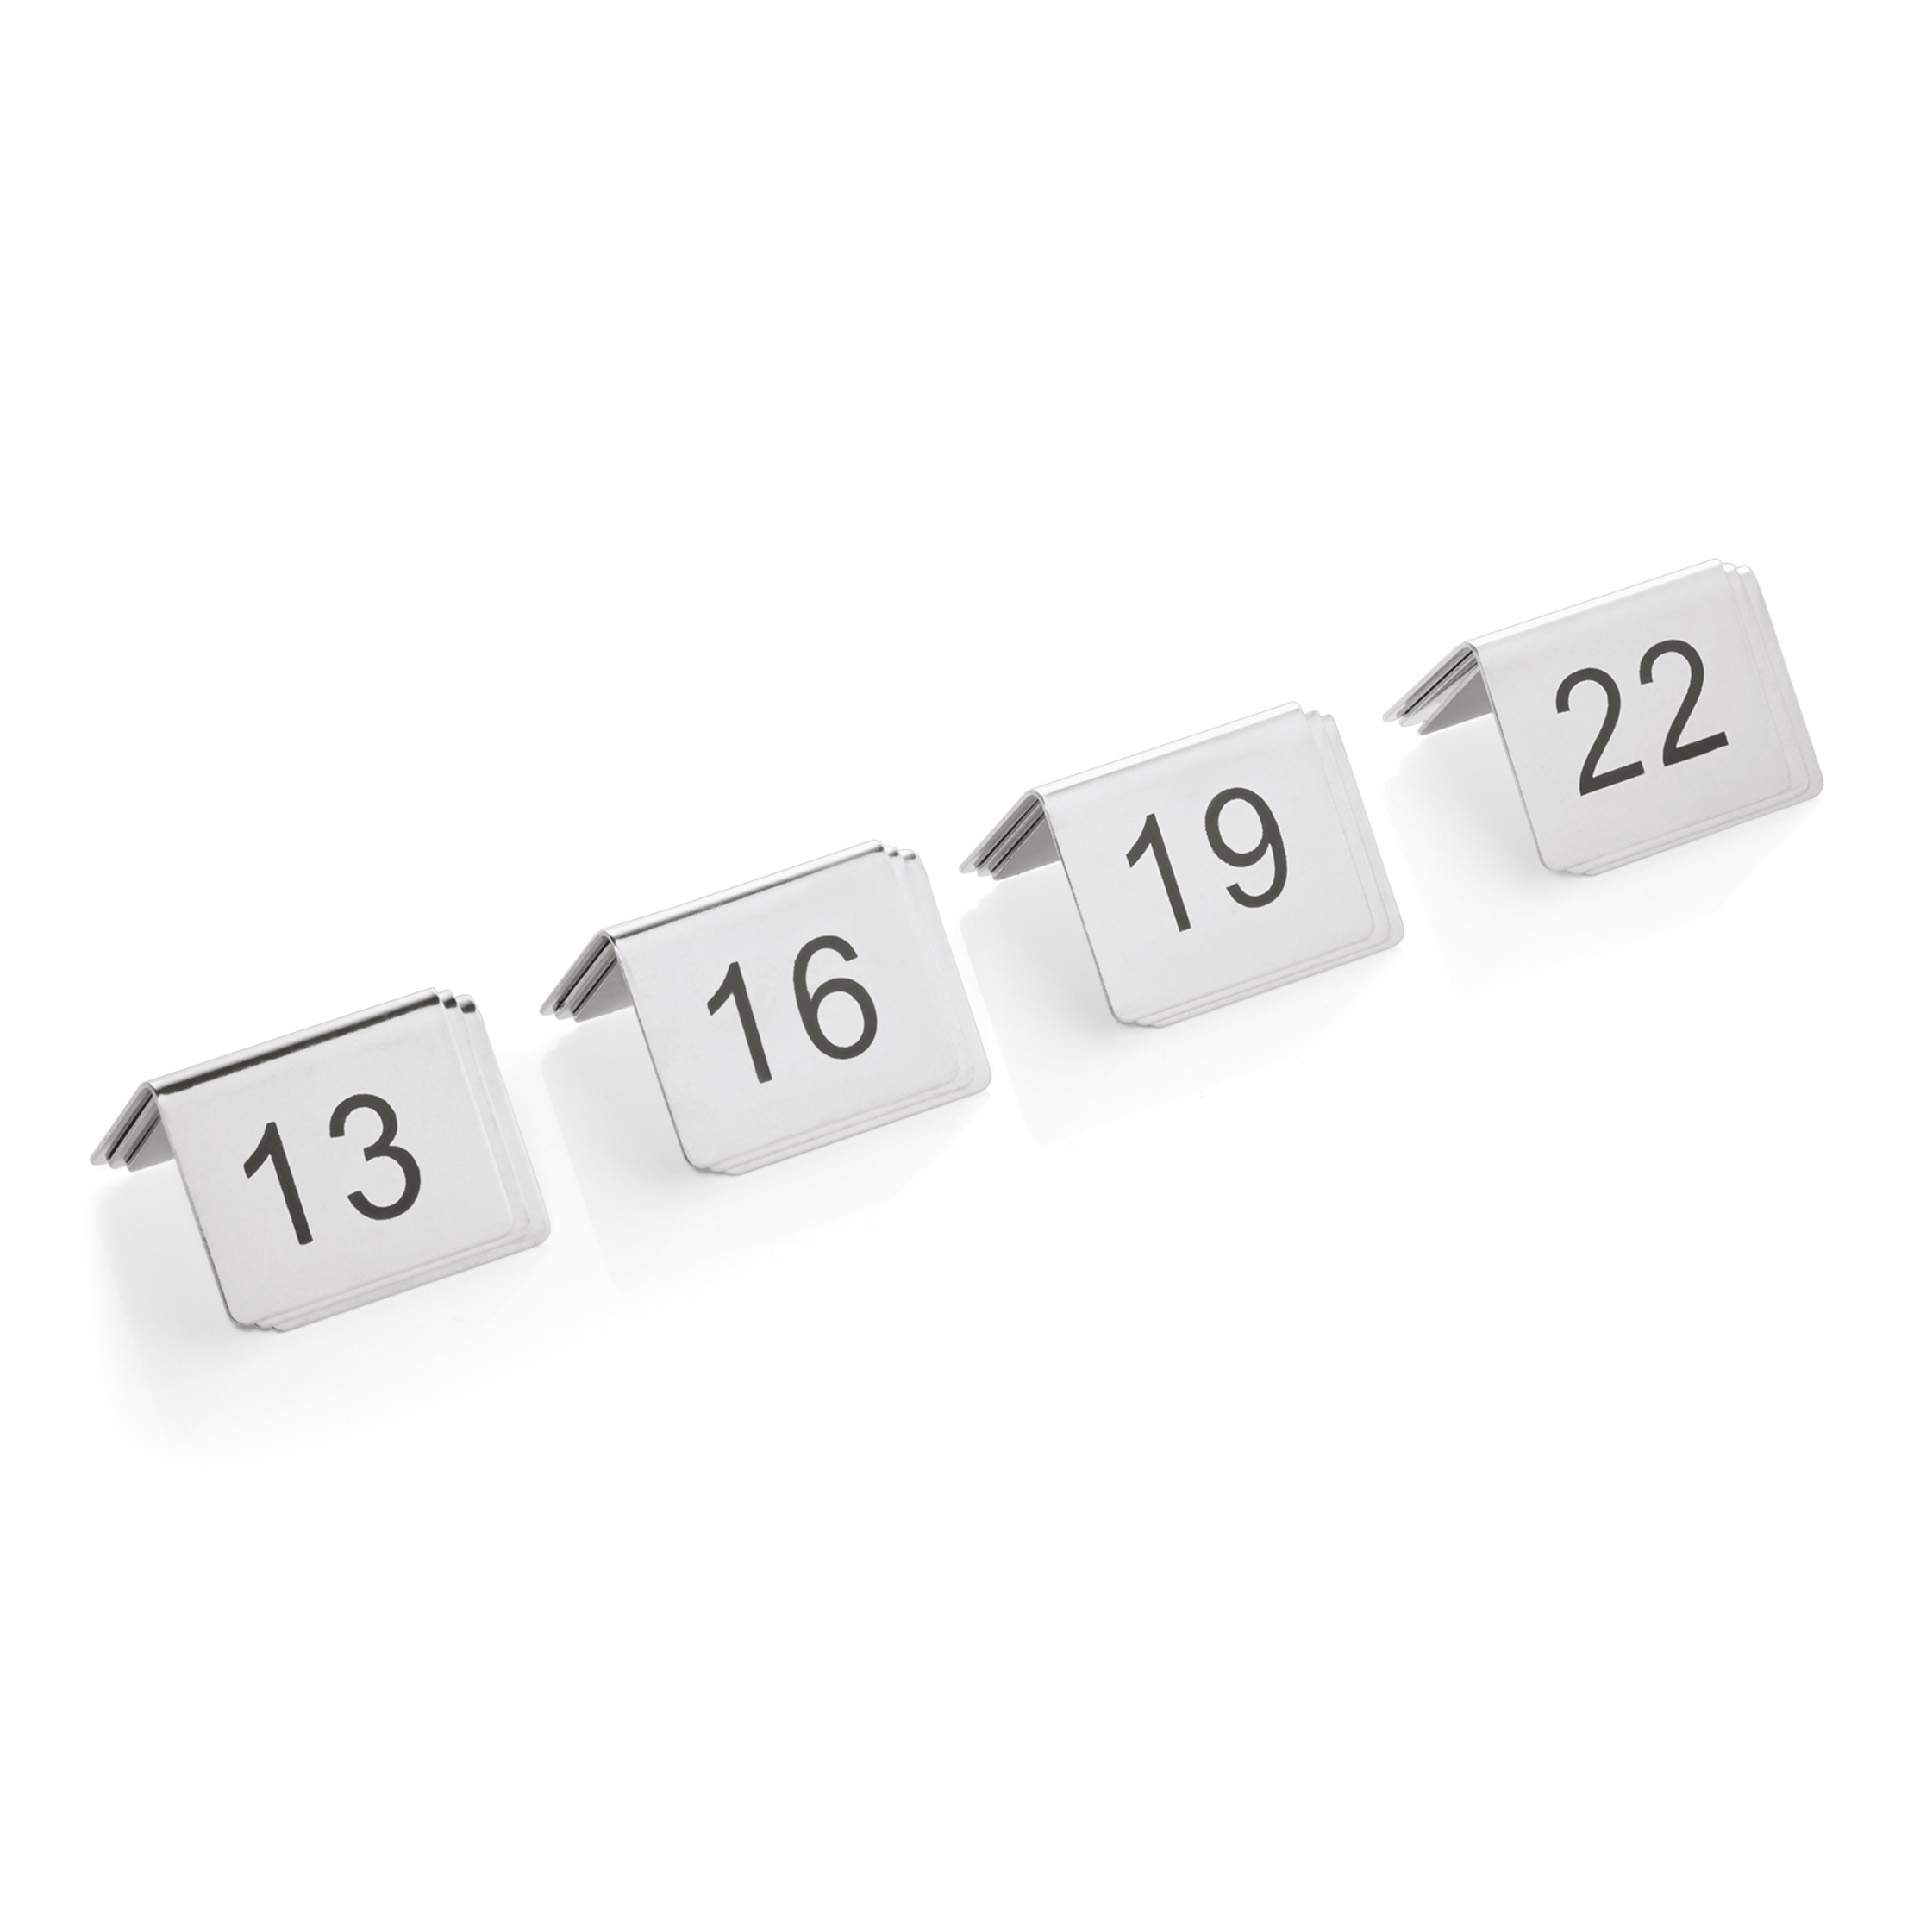 Tischnummernschild - 13-24 - Abm. 5 x 5 x 4,5 cm - Chromnickelstahl - 1432024-A